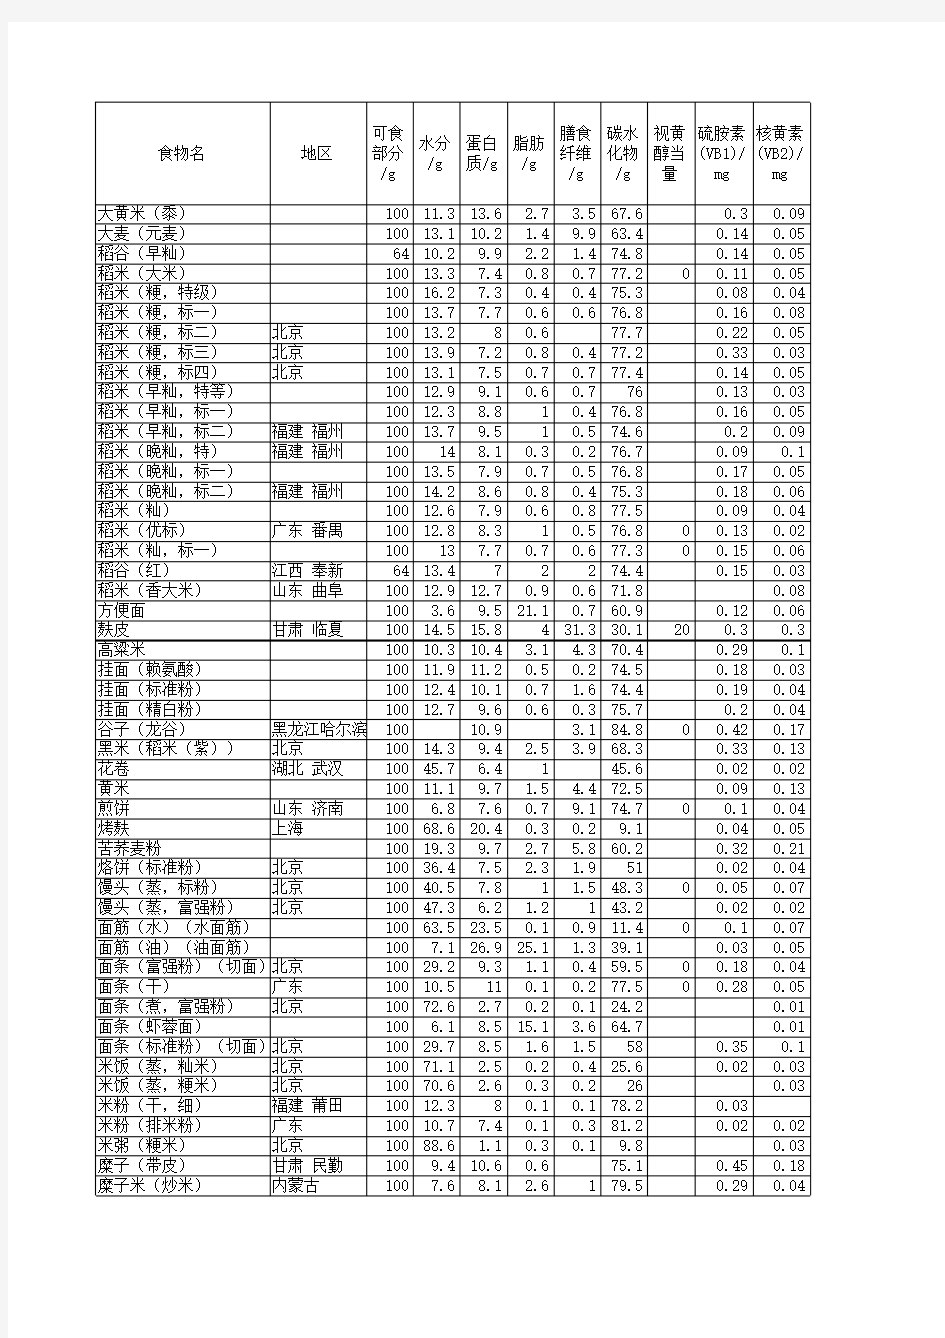 中国食物成分表2010版(修正版)